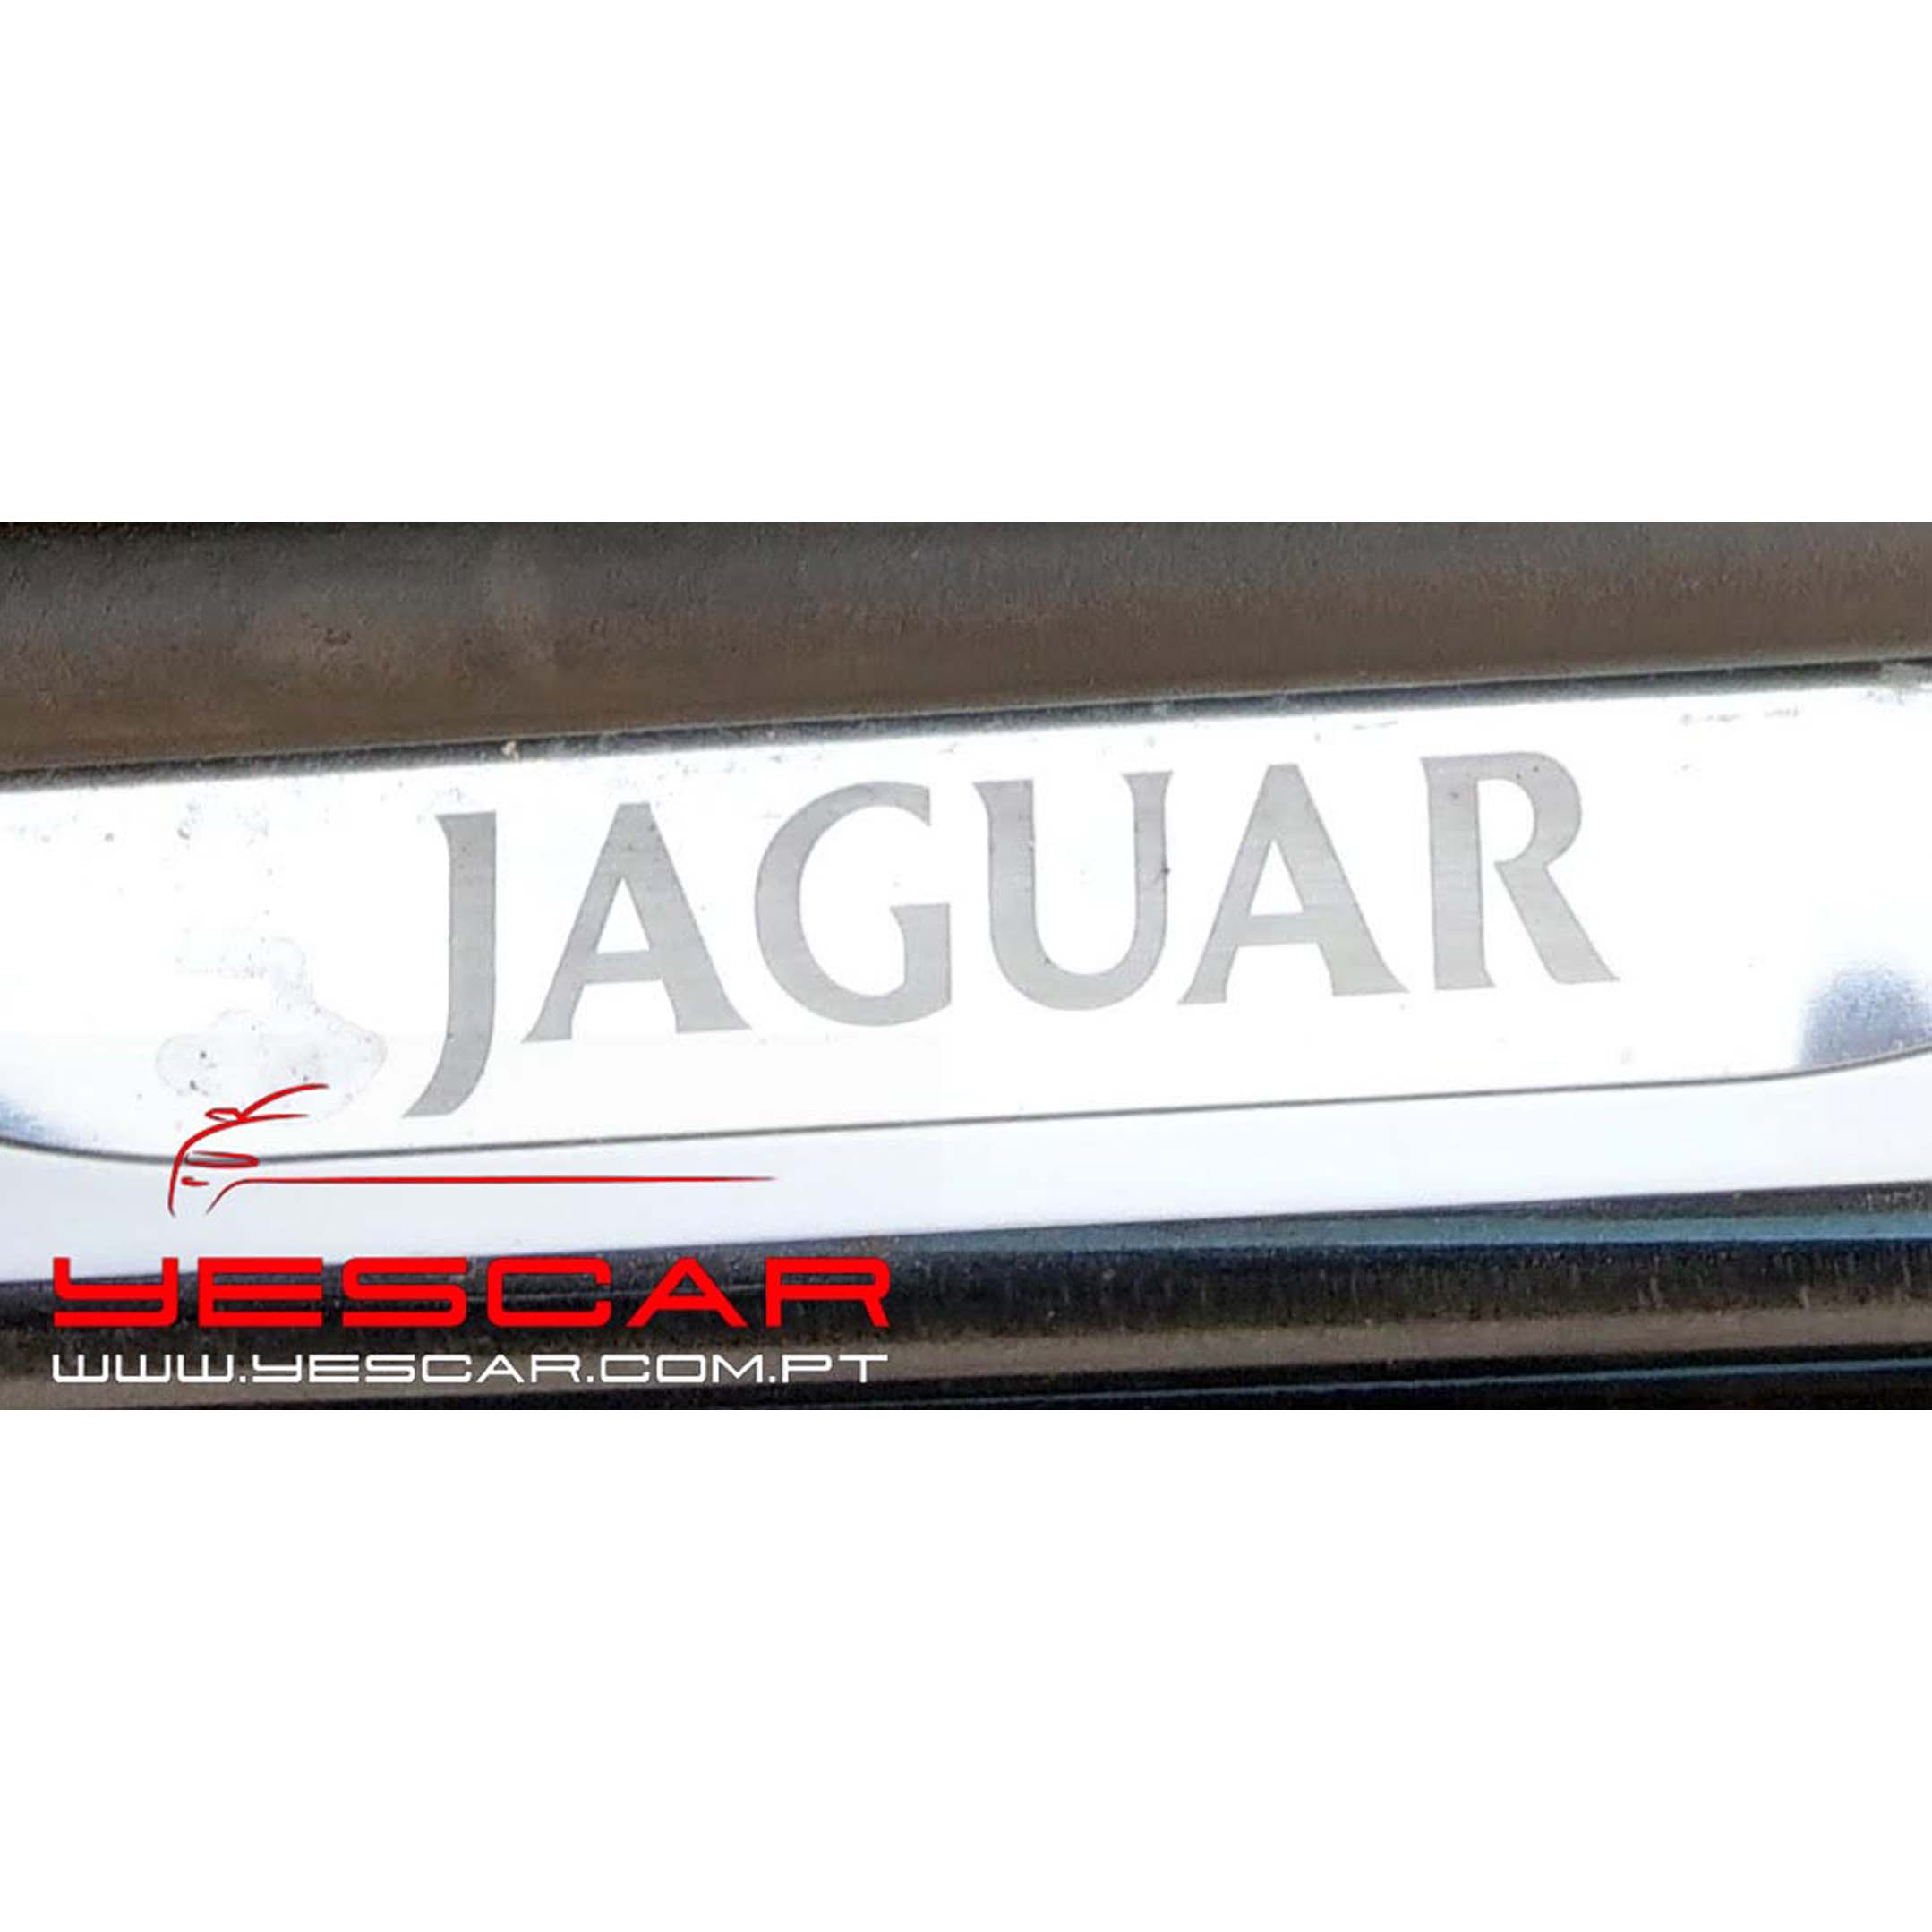 YESCAR_JaguarXtype 22D155cv q (17)